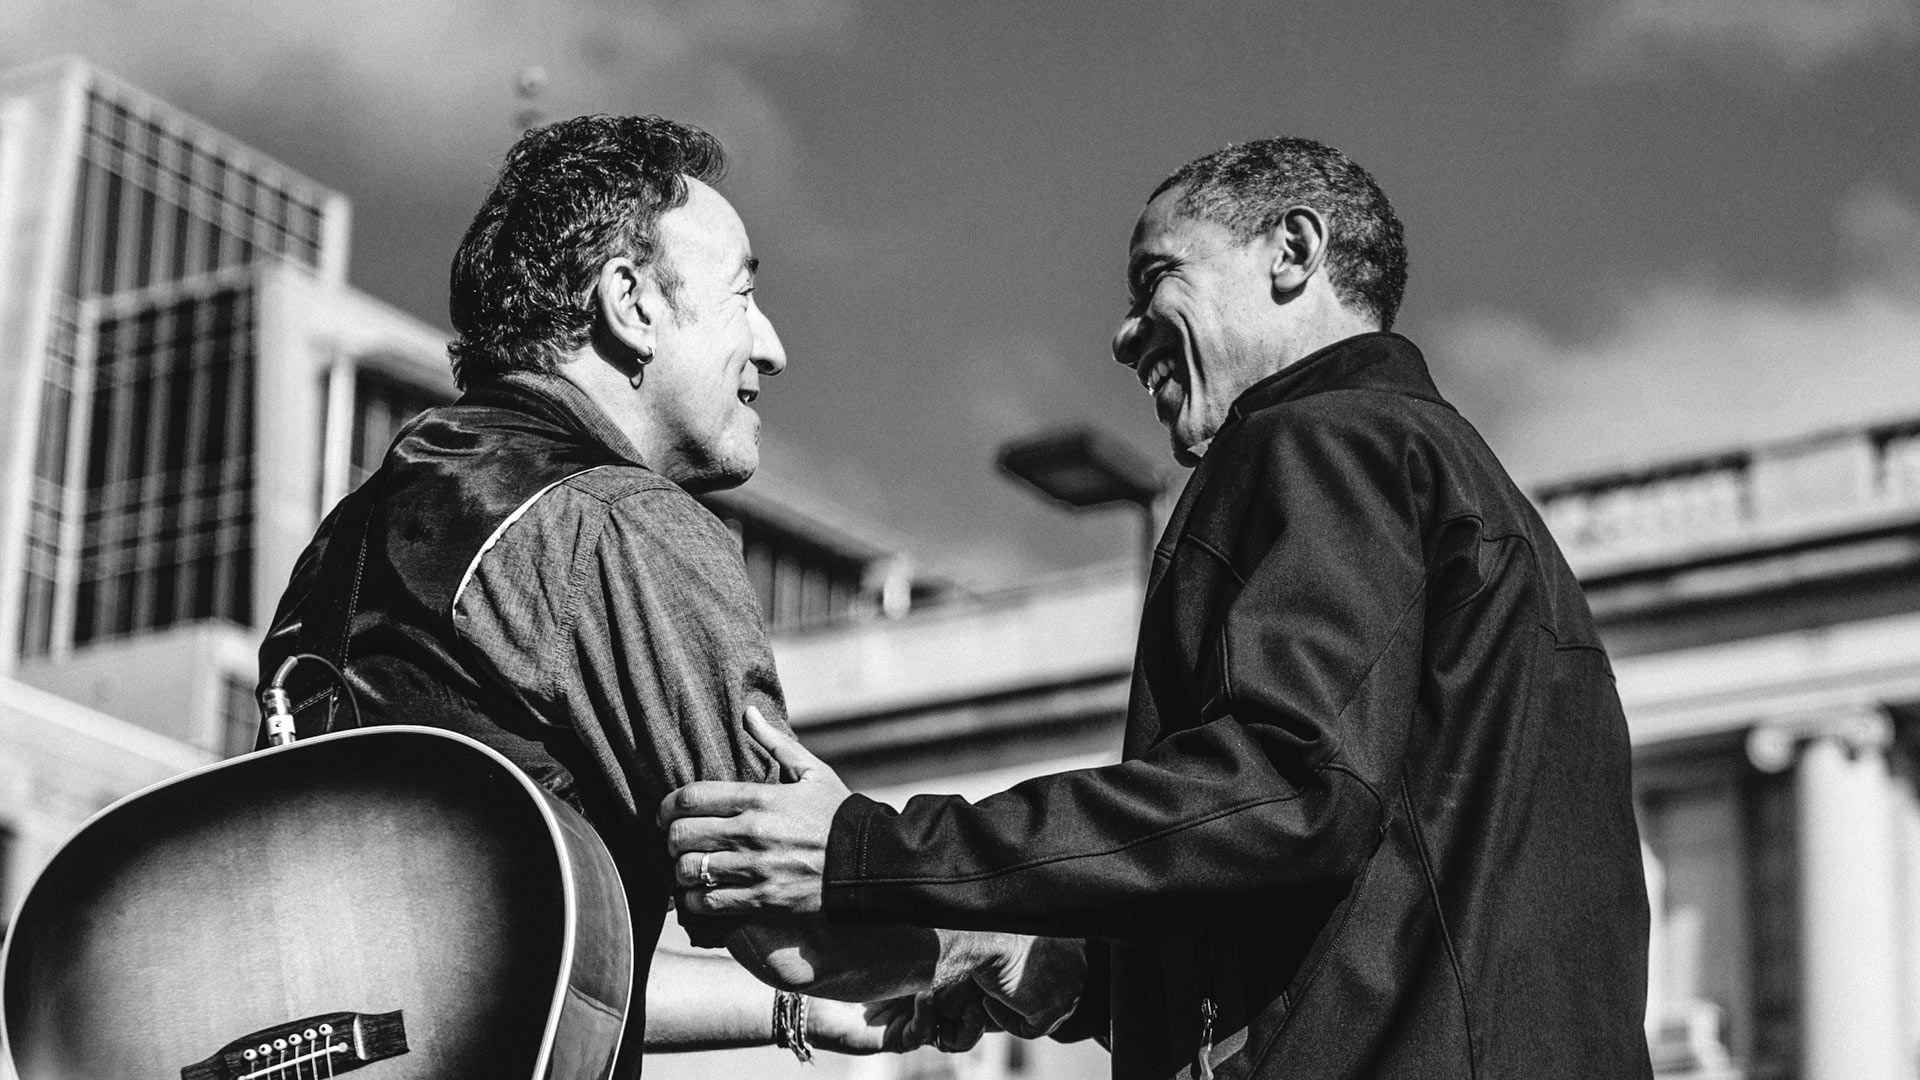 Dica de leitura: "Renegados" reúne reflexões, fotos e documentos históricos de Barack Obama e Bruce Springsteen